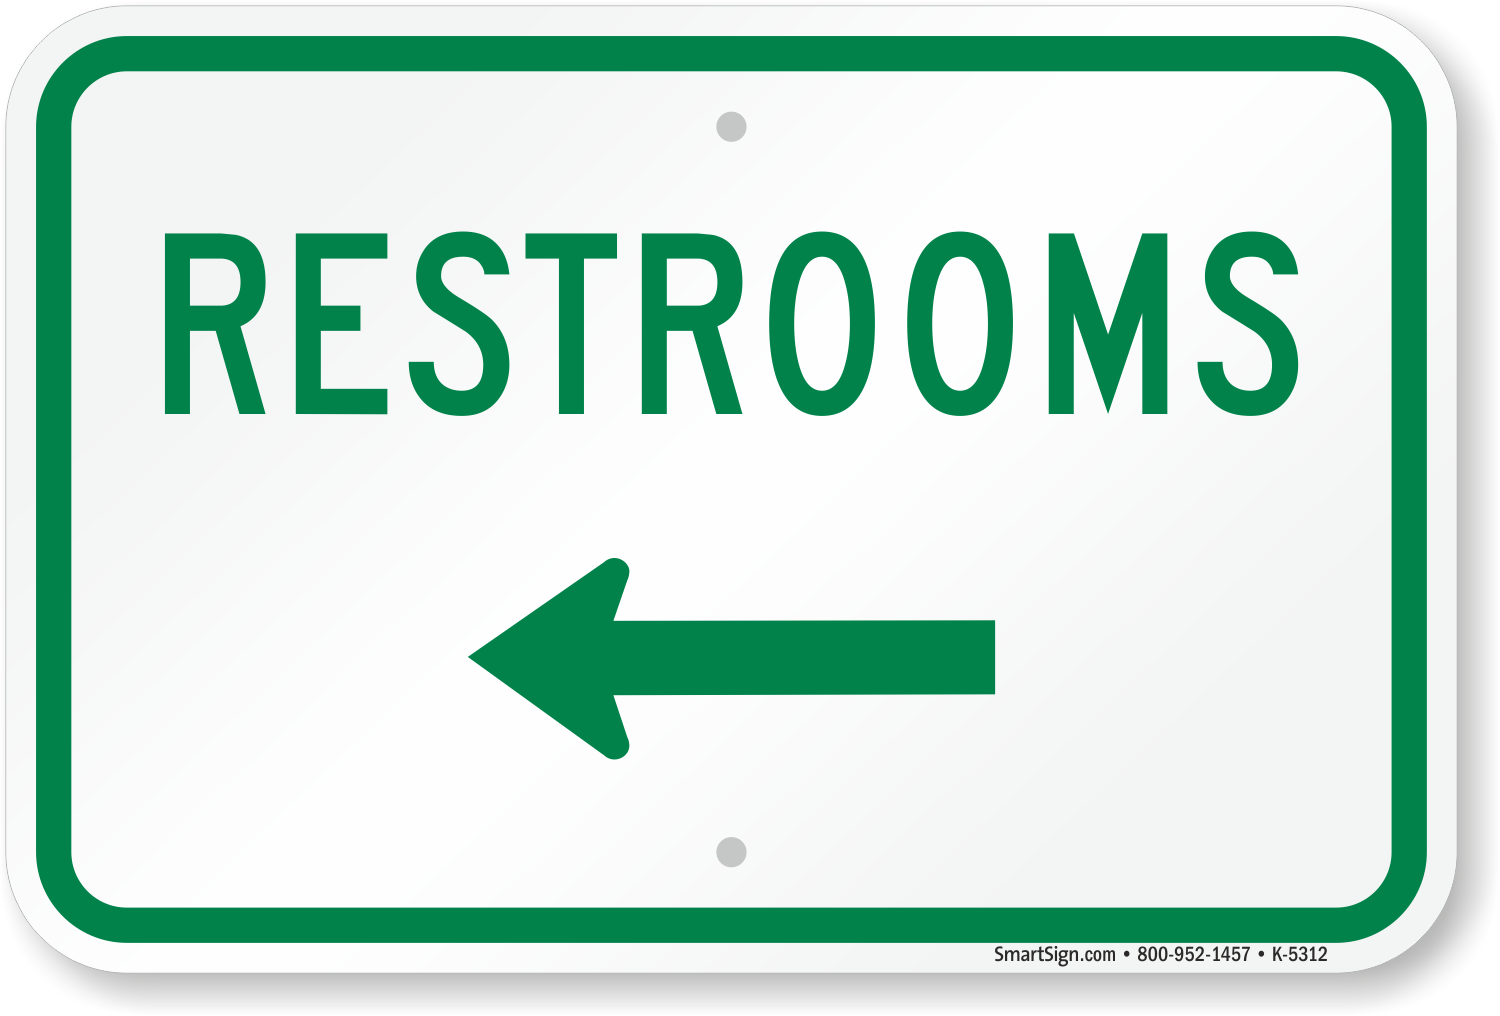 bathroom signs with arrow